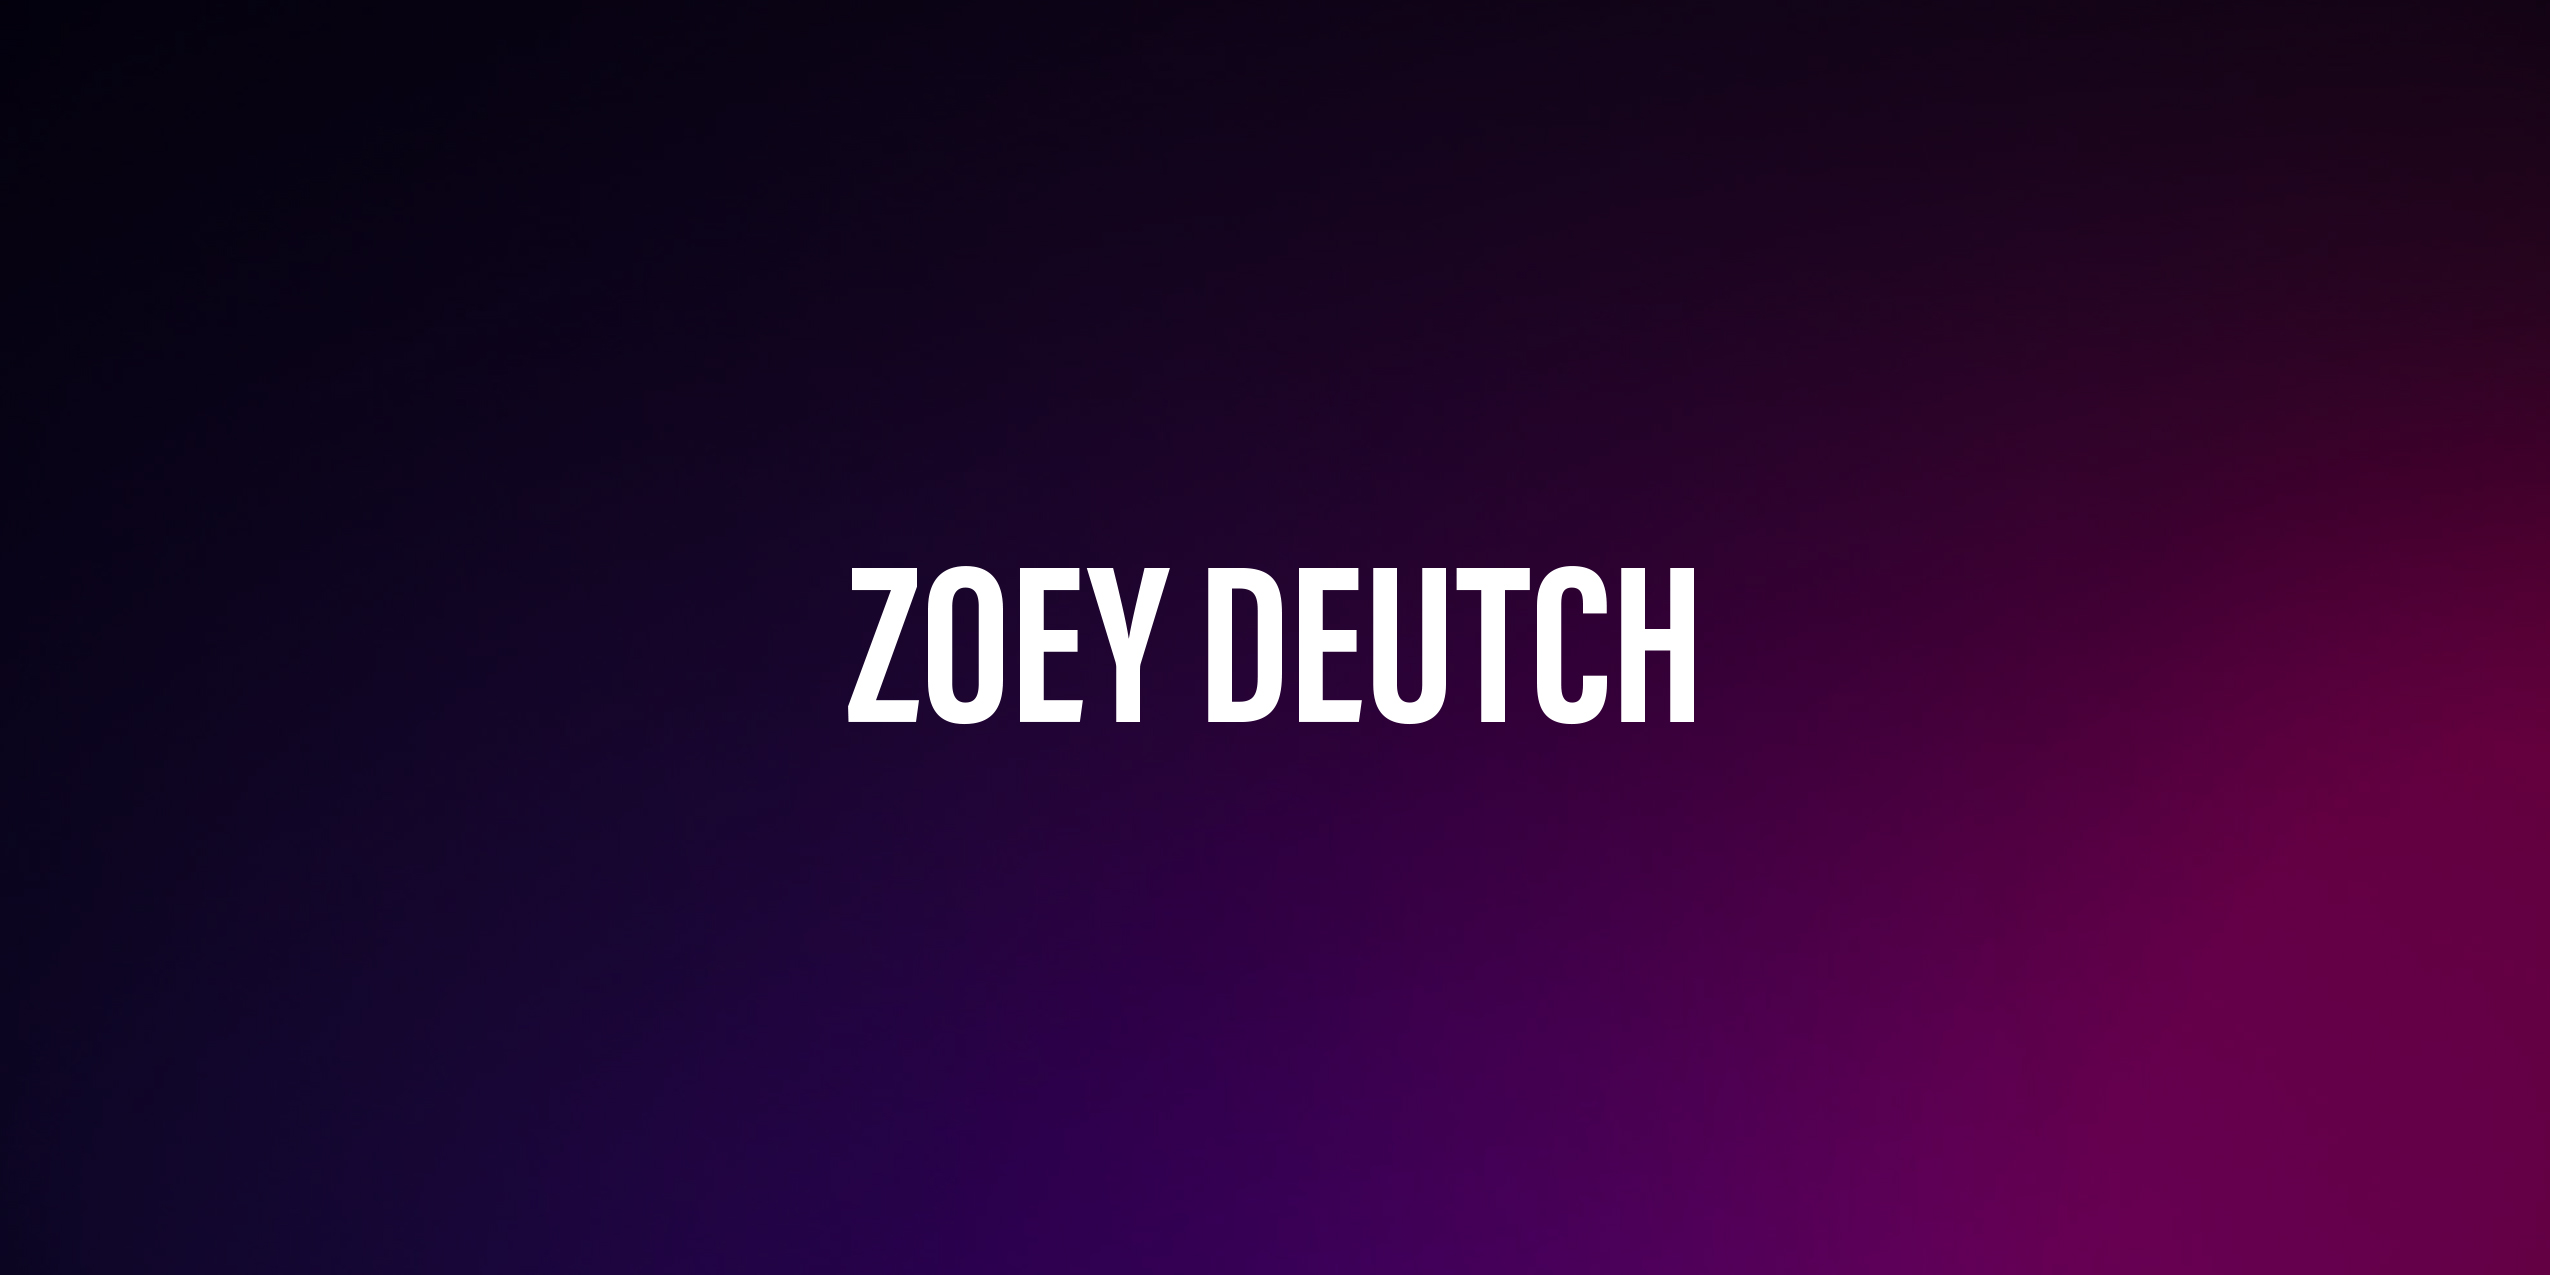 Zoey Deutch – życiorys i filmografia